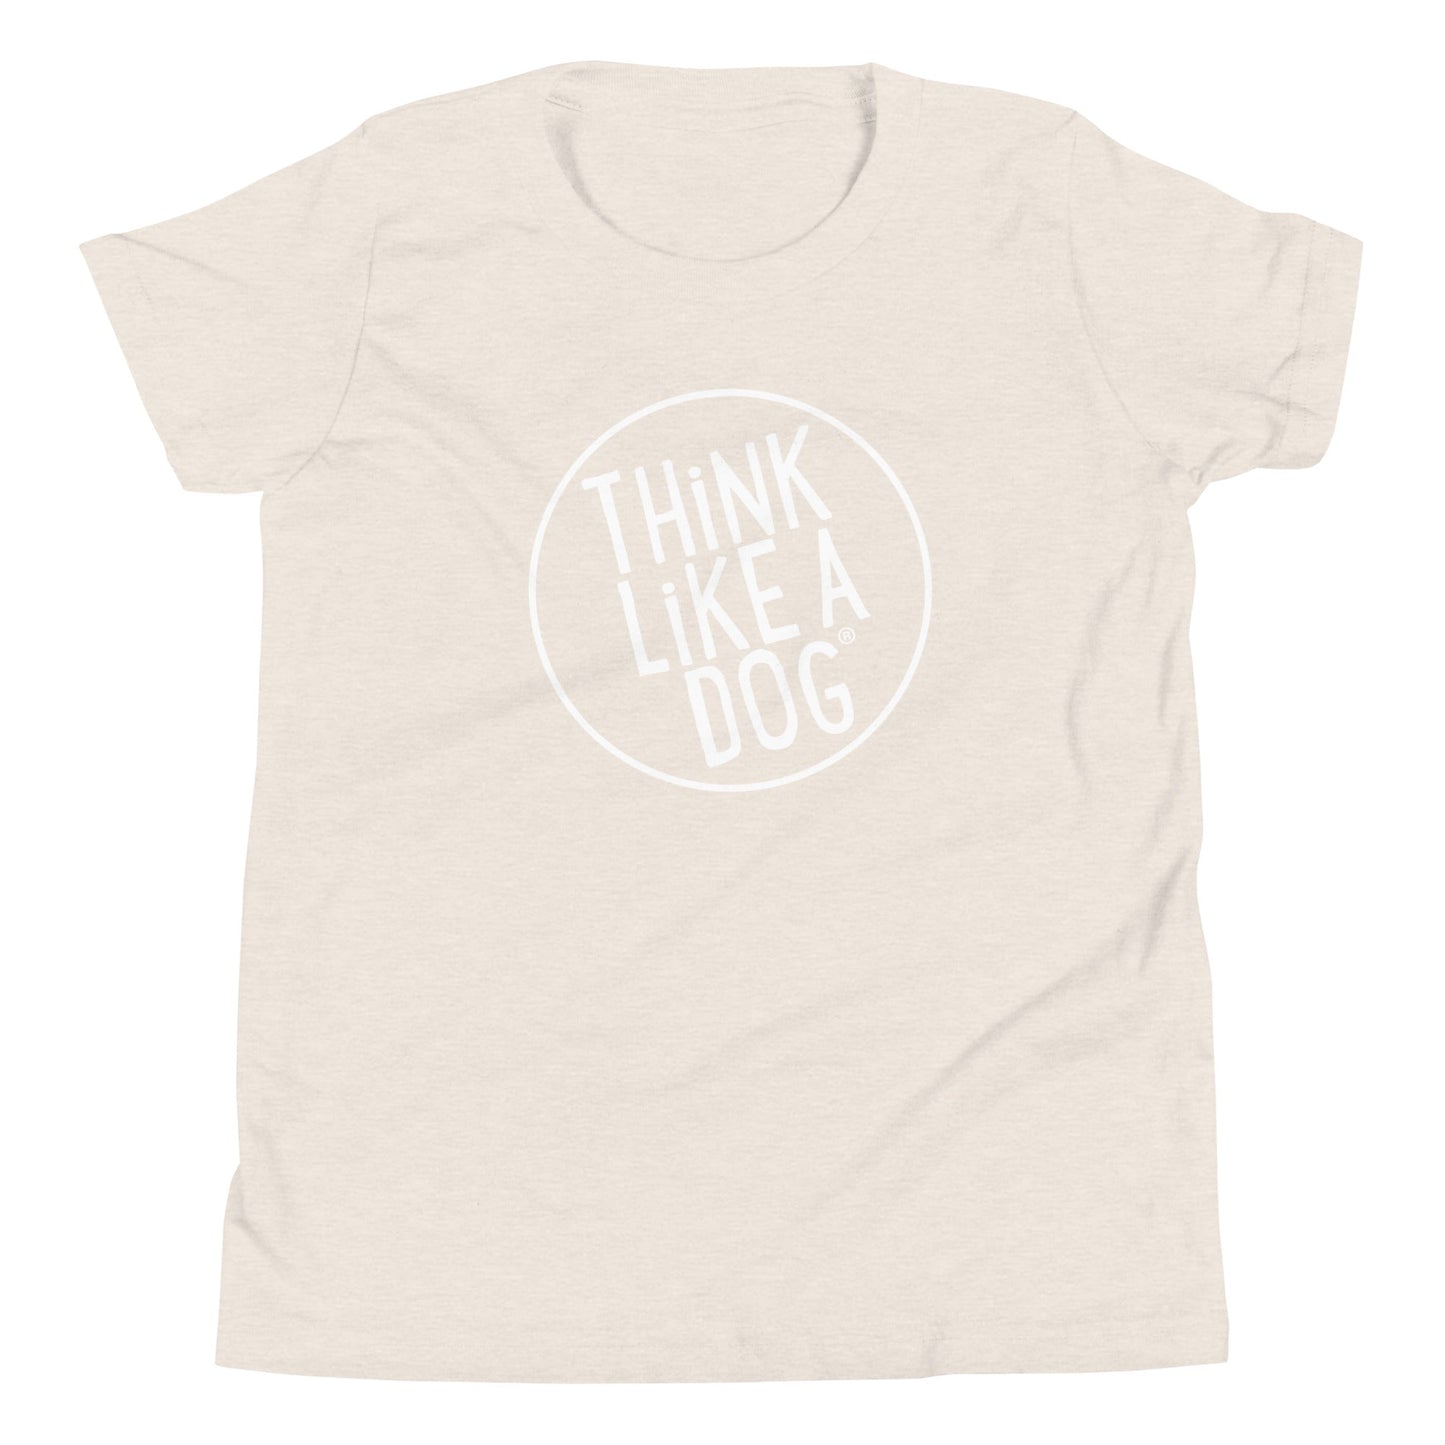 THiNK LiKE A DOG® White Logo Kids Short Sleeve T-Shirt - THiNK LiKE A DOG®